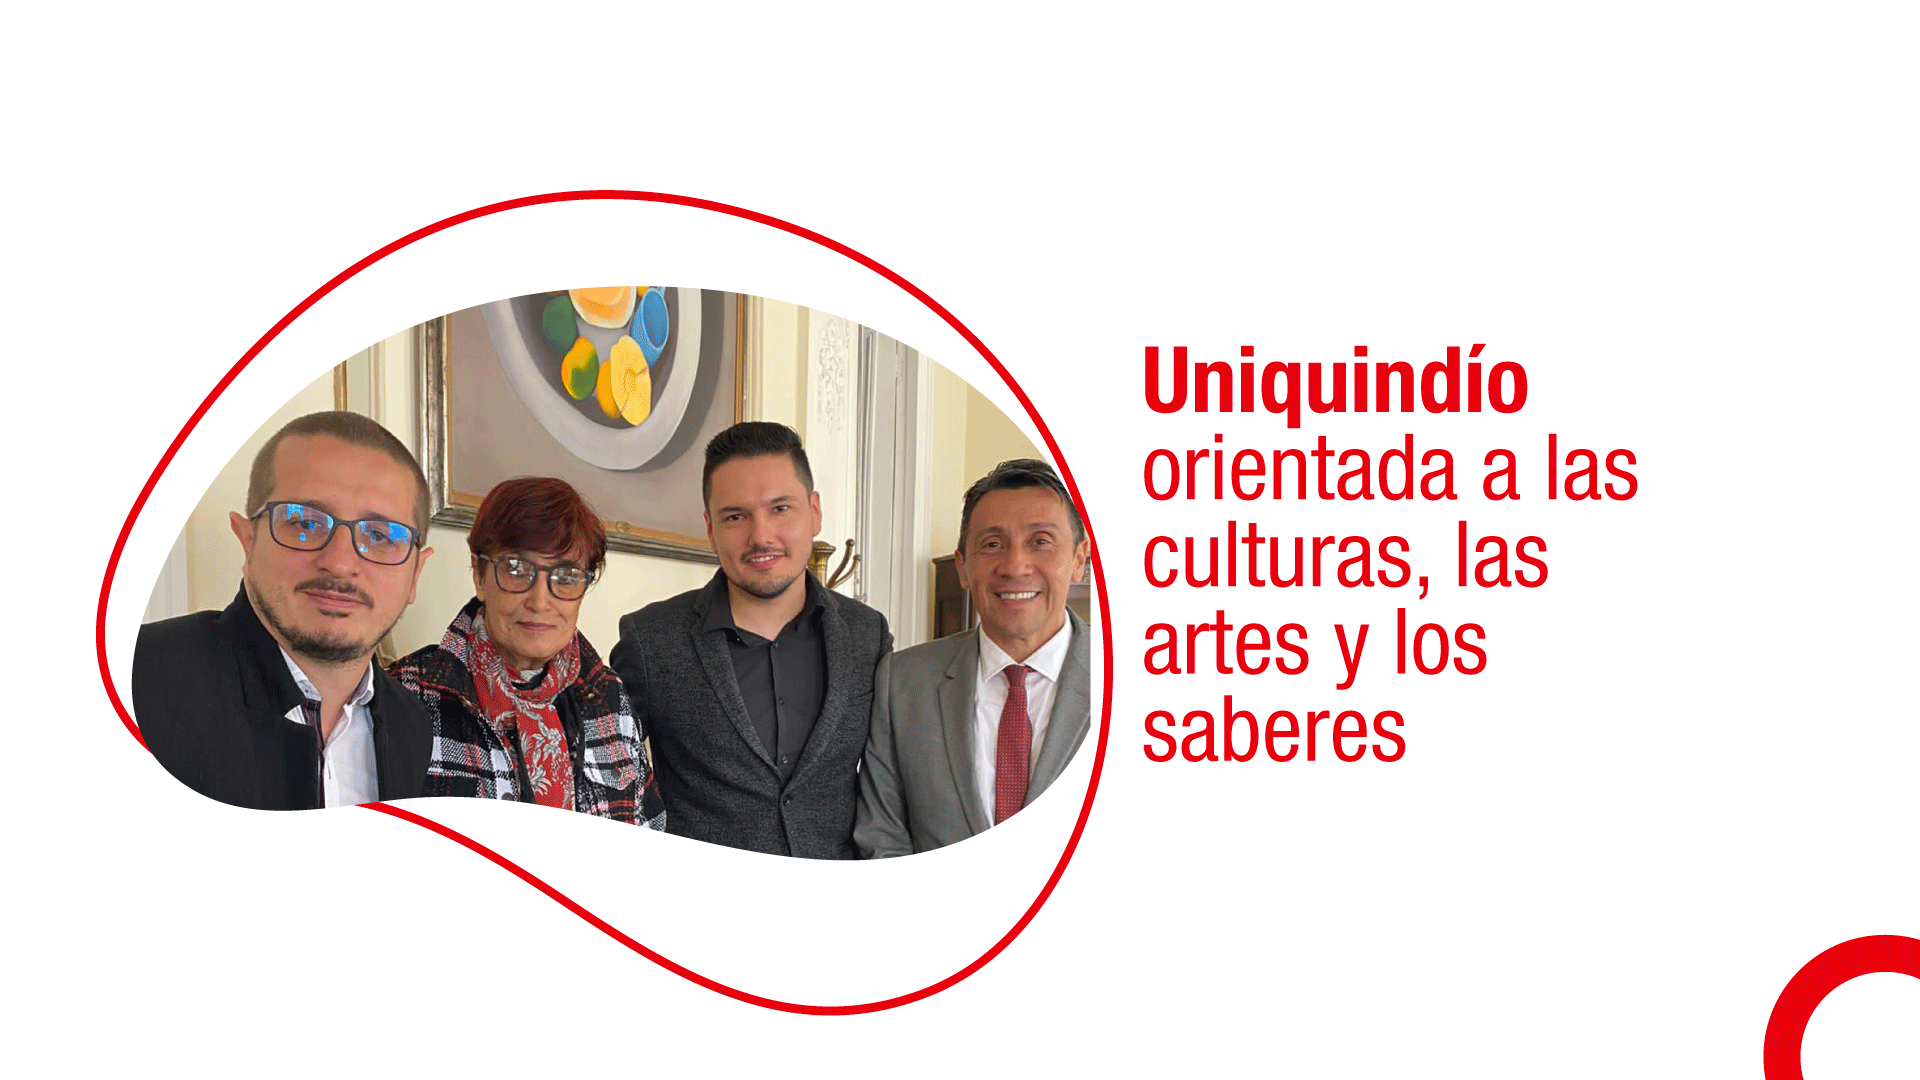 Uniquindío orientada a las culturas, las artes y los saberes